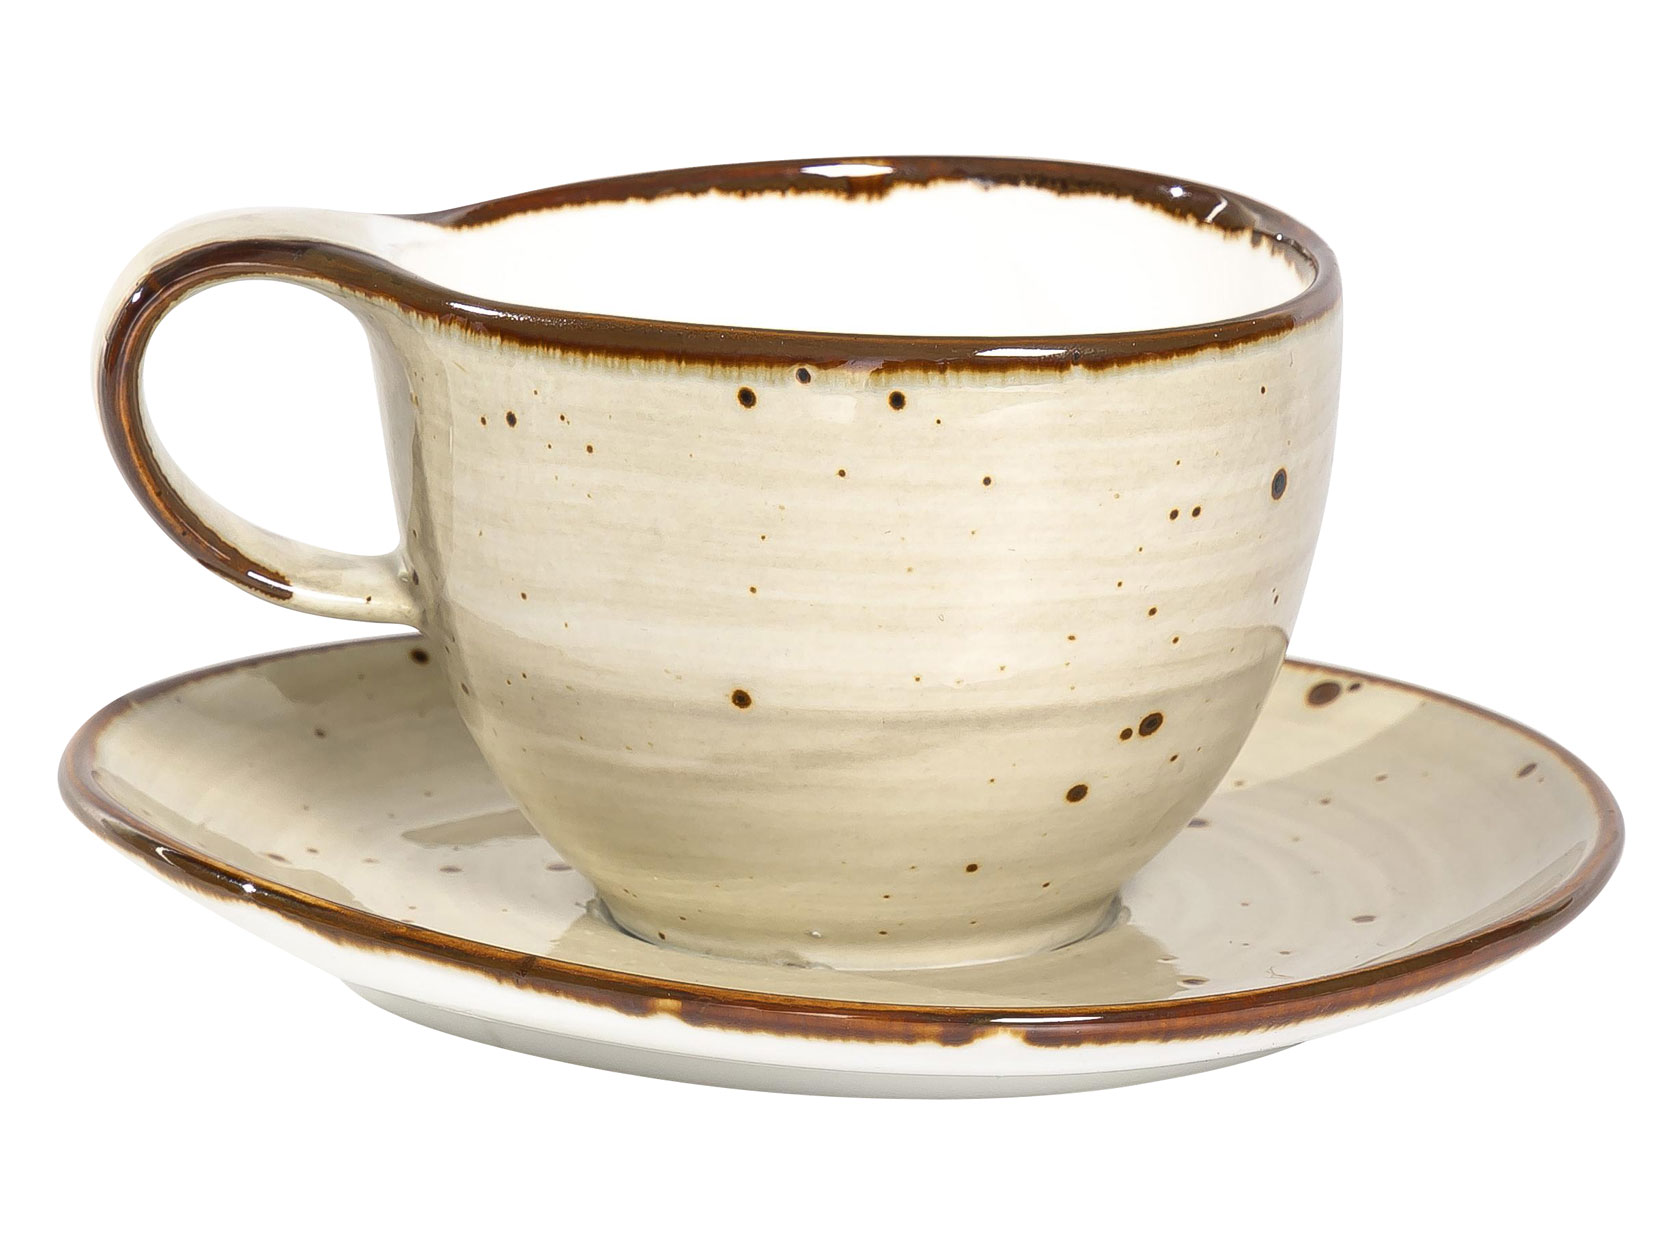 Чайная пара ХОРЕКА ГРАФИТ, набор чайный (2) чашка 250мл + блюдце 160х150мм, индивид.упаковка - гофрокороб Хорека Графит фото 1